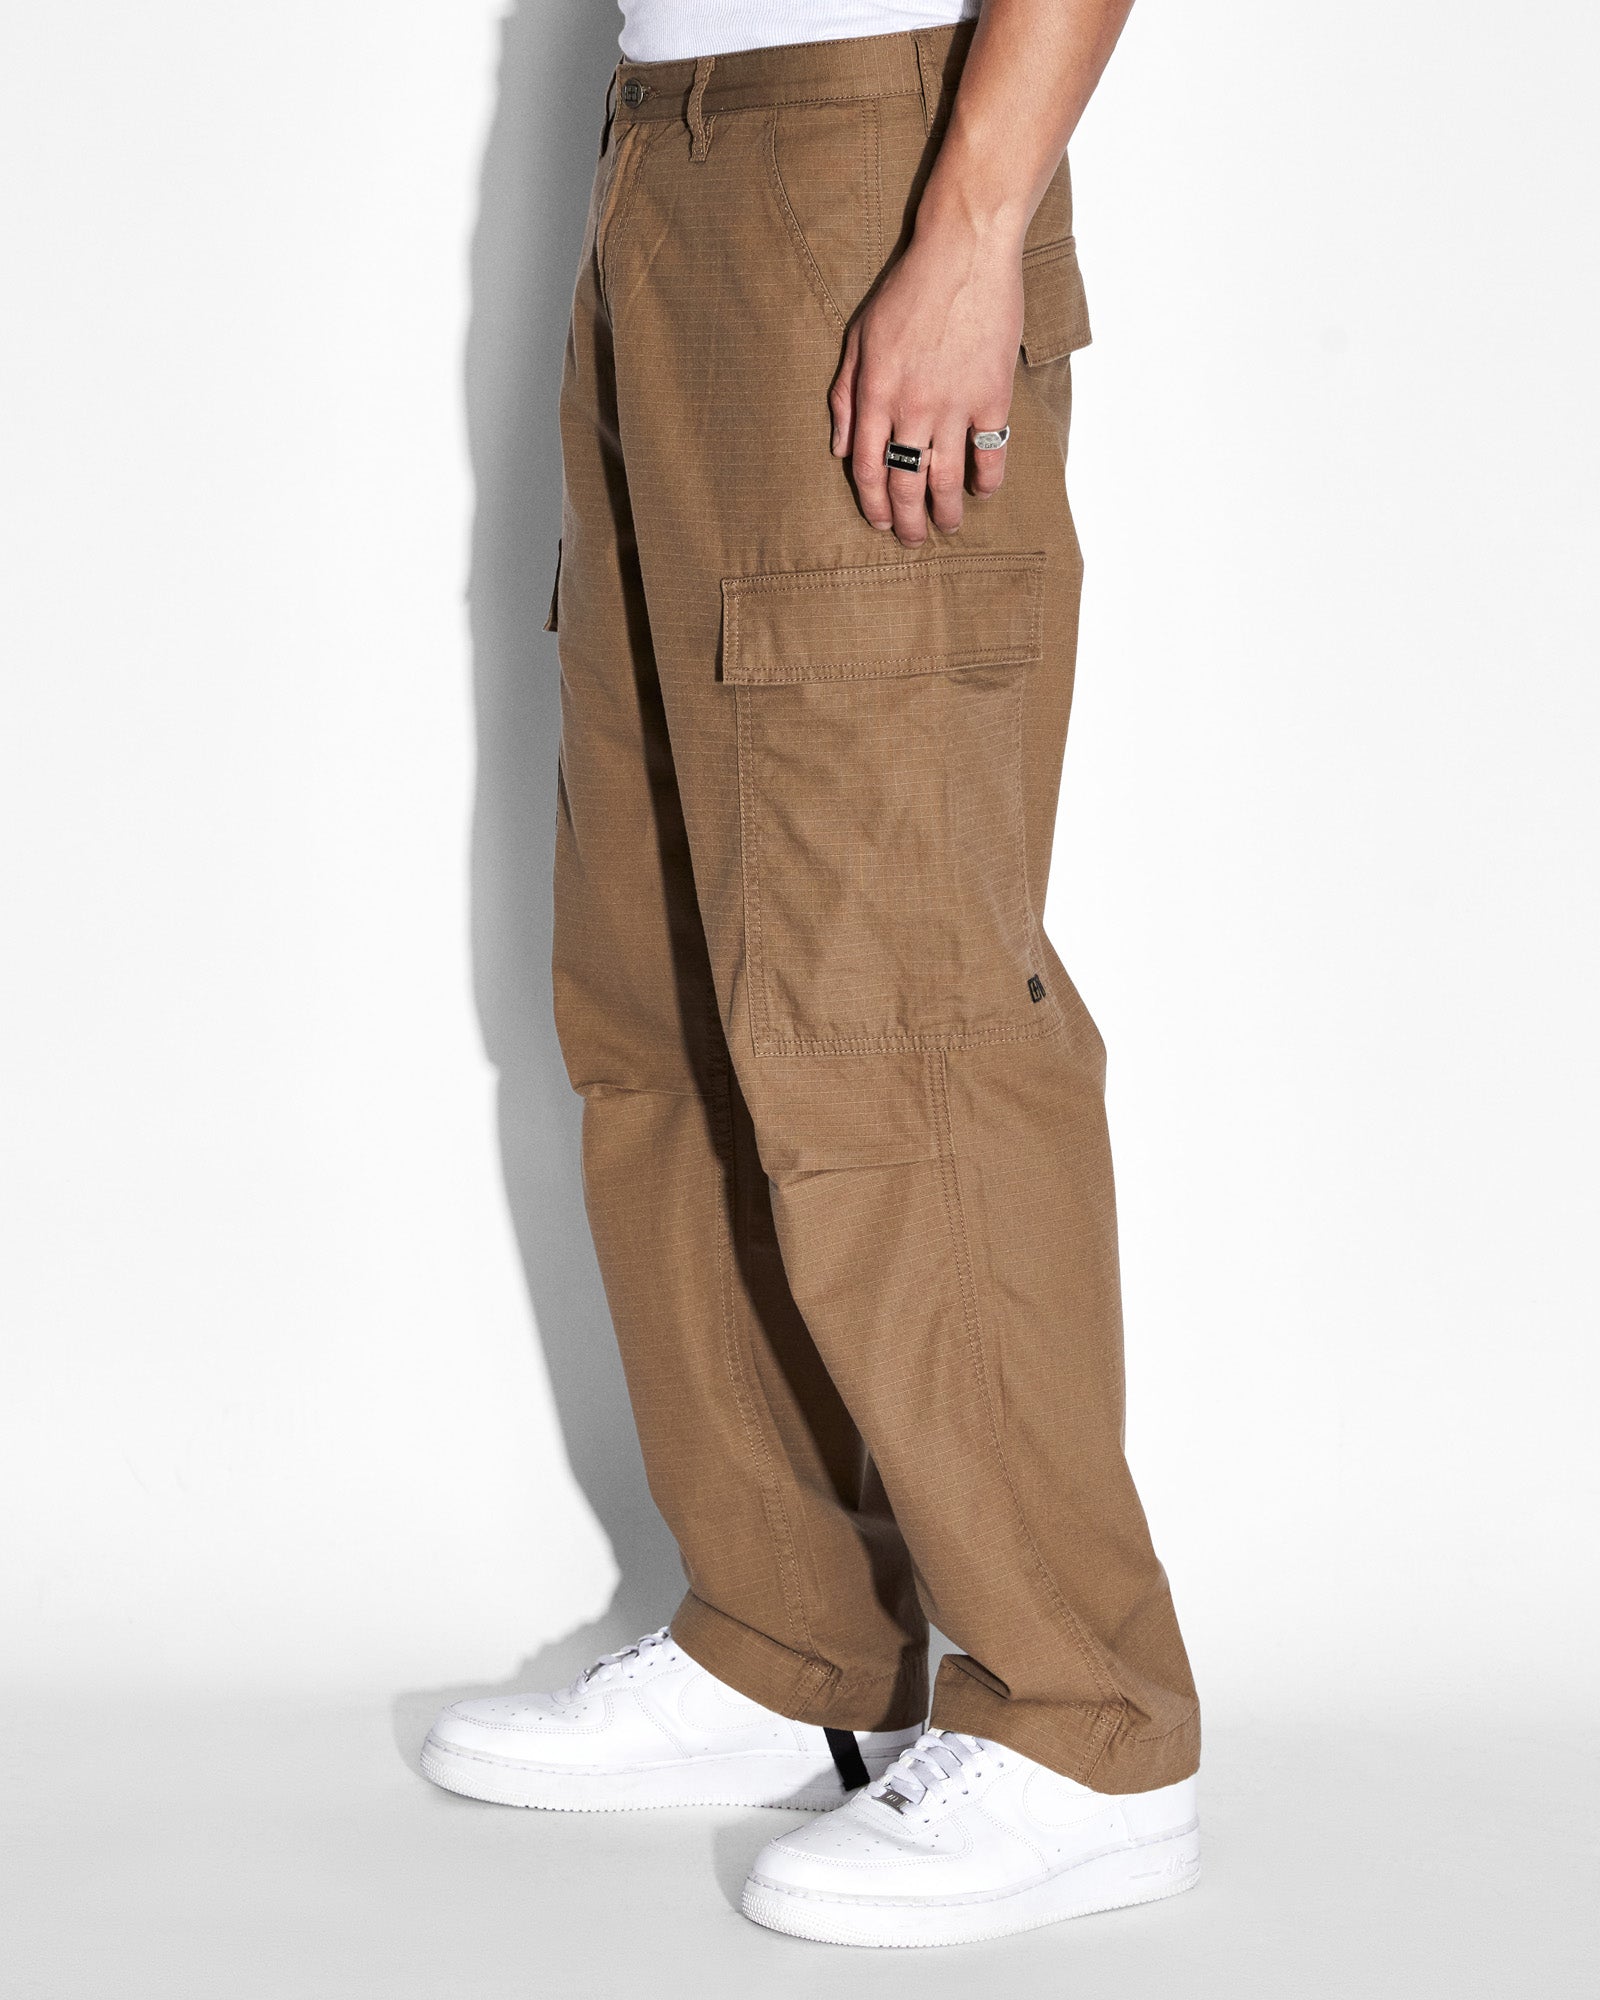 Highsnobiety – Nylon Cargo Pants Brown | Highsnobiety Shop